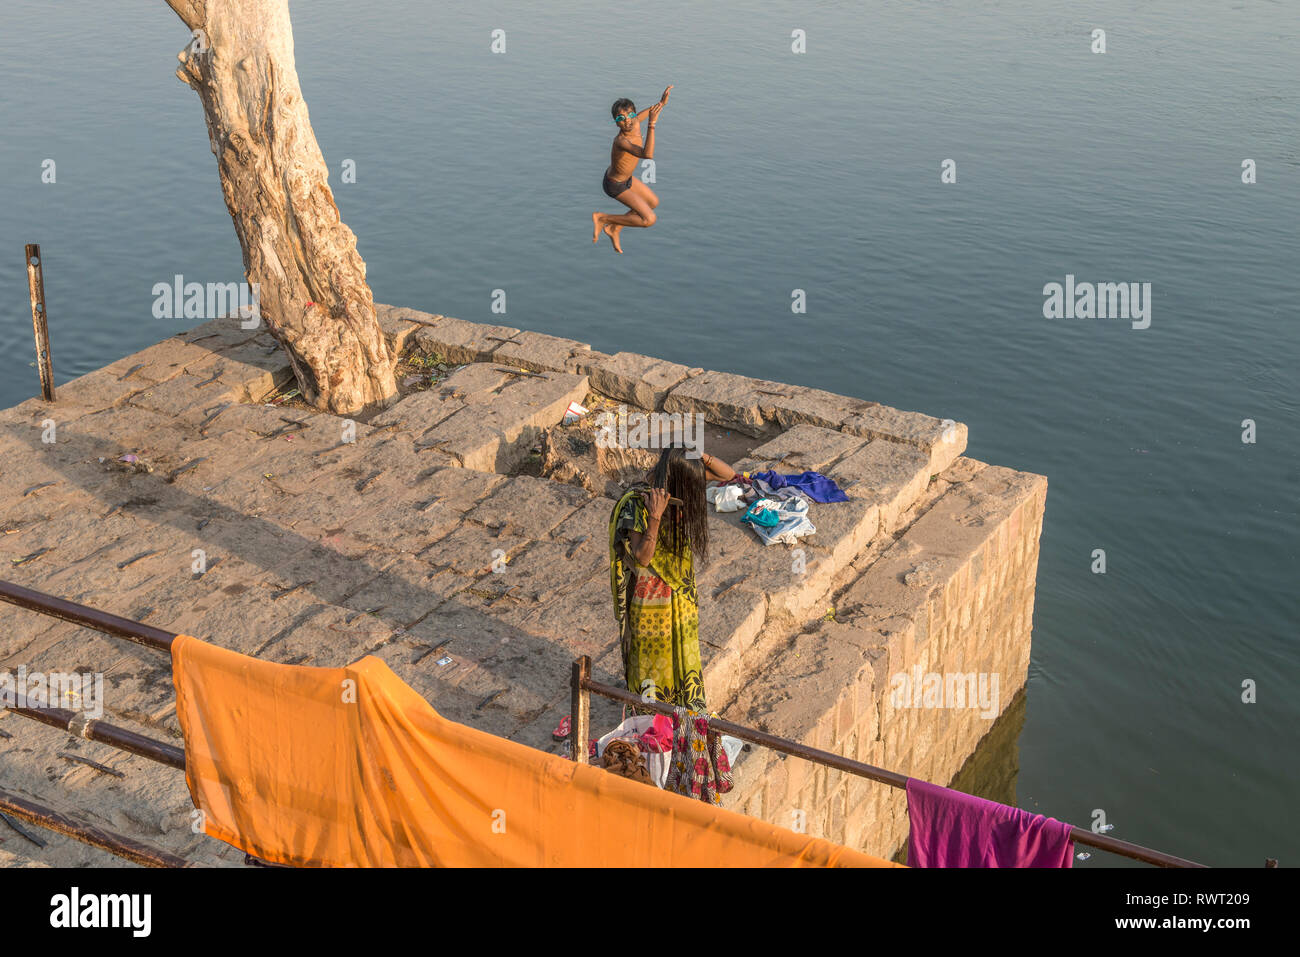 ORCHA, Madhya Pradesh, Inde. Garçon novembre avec lunettes de natation en sautant d'une plate-forme dans la rivière Betwa Banque D'Images